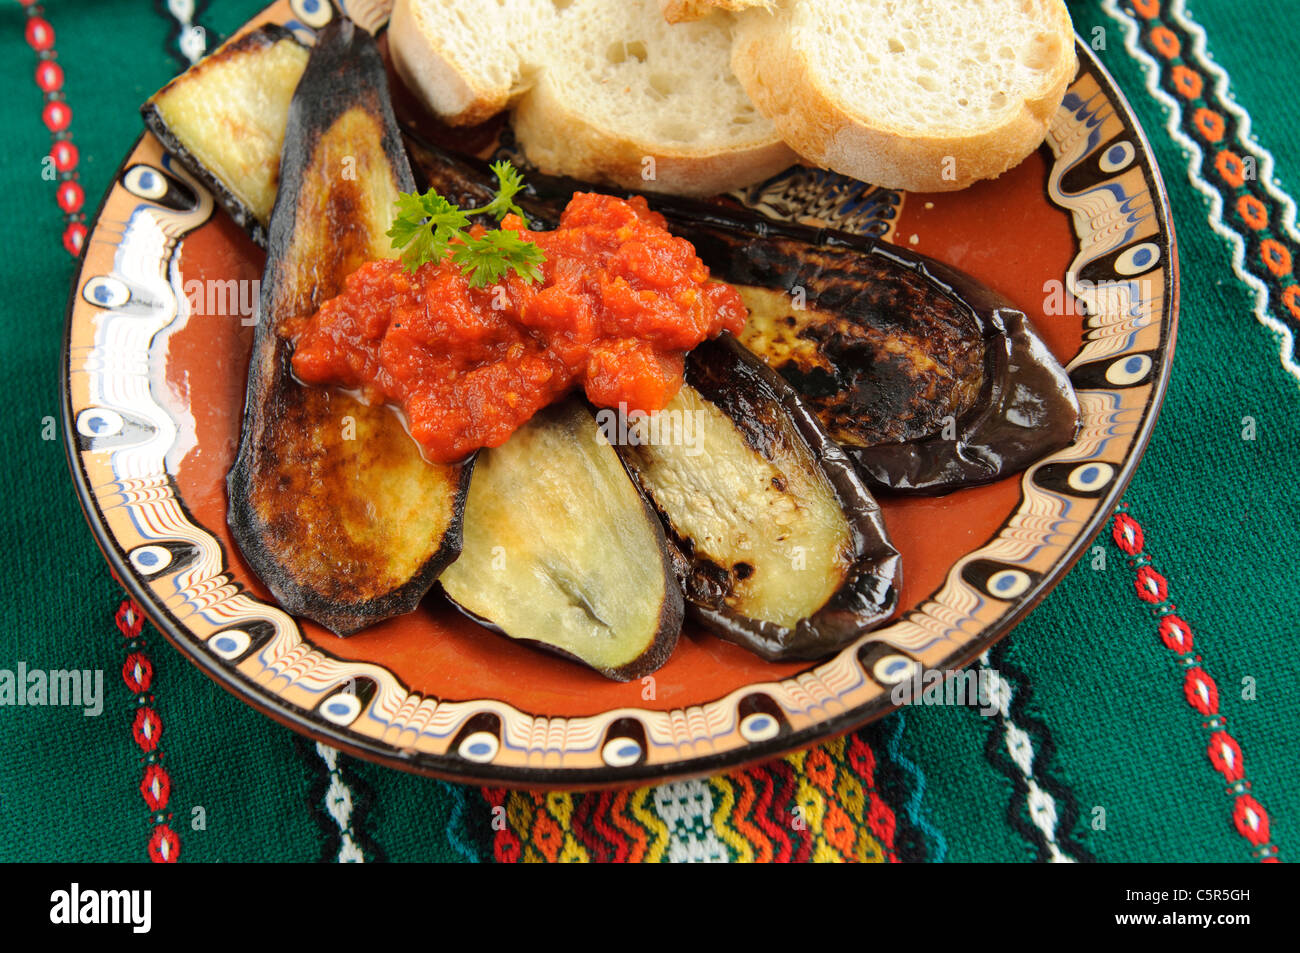 Tradizionale piatto bulgaro - melanzane alla griglia con salsa di pomodoro Foto Stock